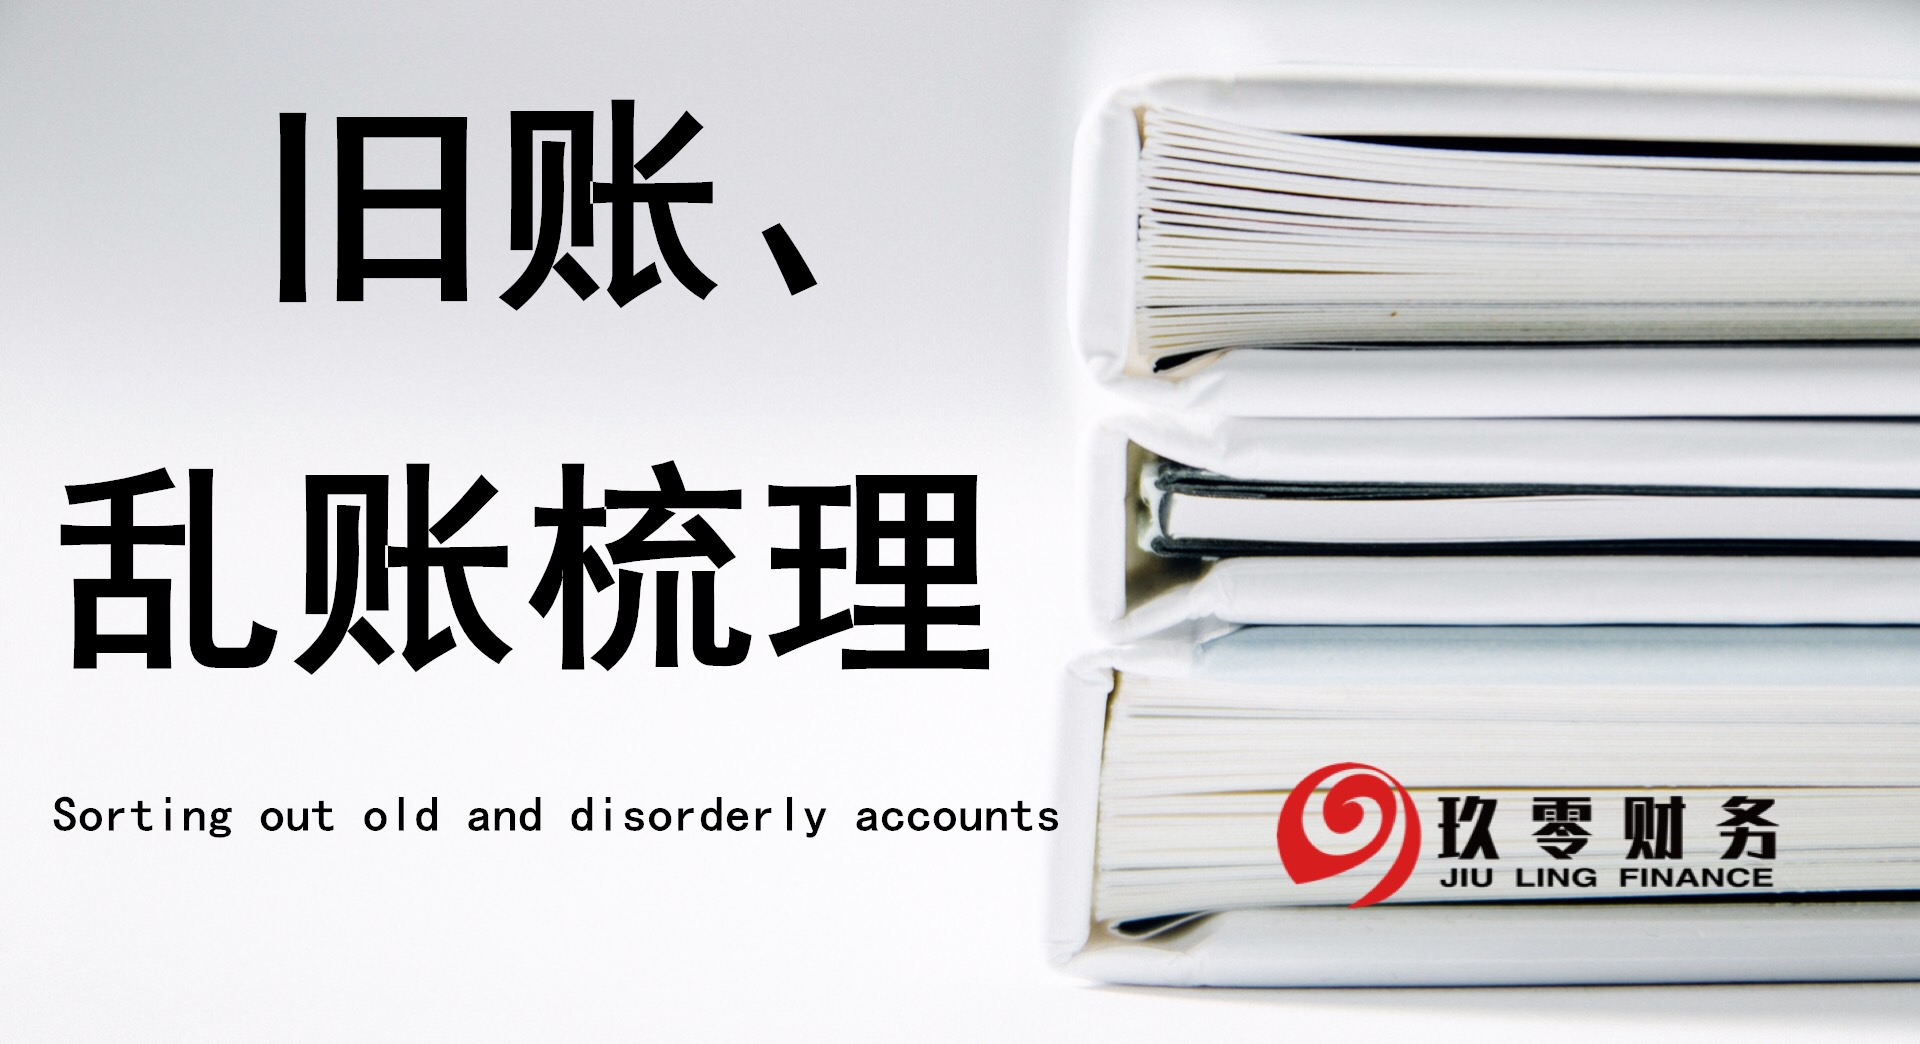 玖零专业生产广州天河注册公司、广州工商注册代理等商务服务产品